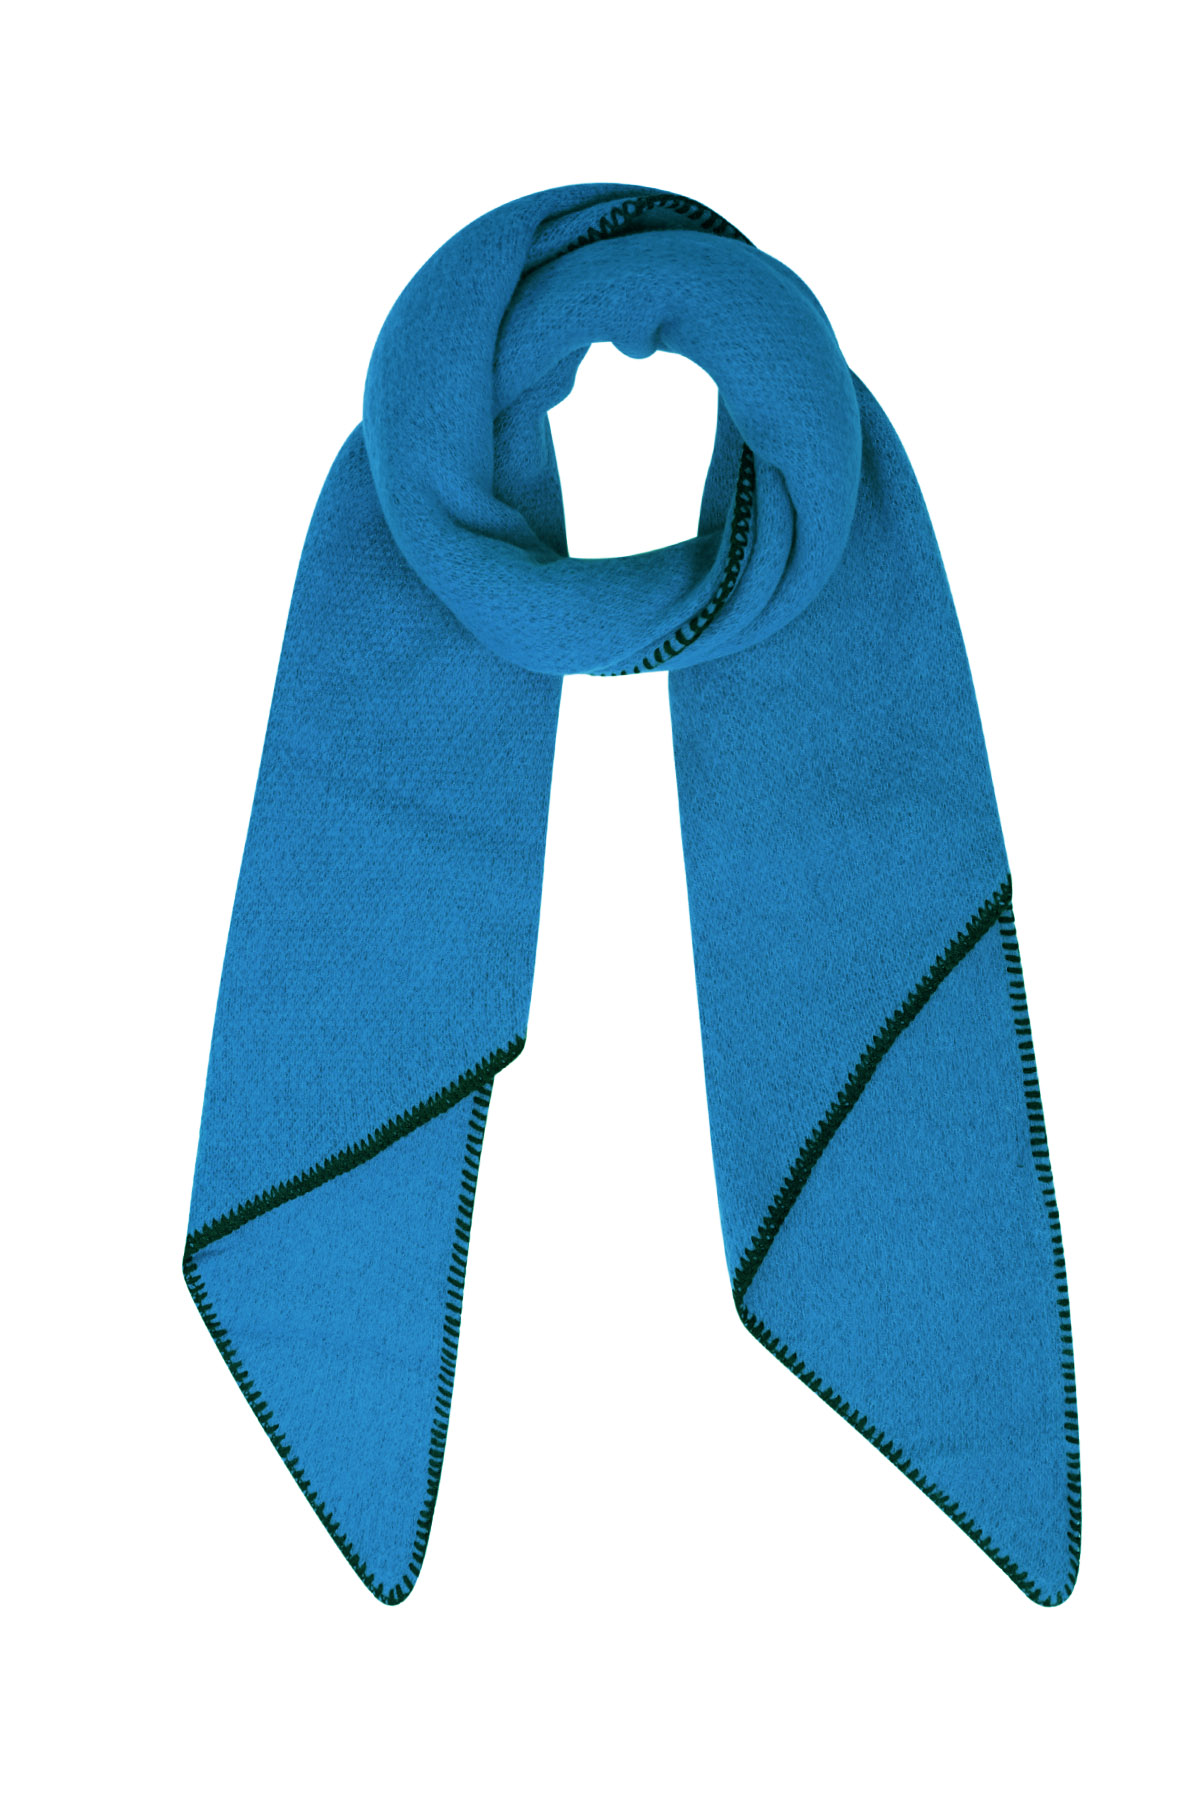 Wintersjaal eenkleurig met zwarte stiksels - donkerblauw h5 